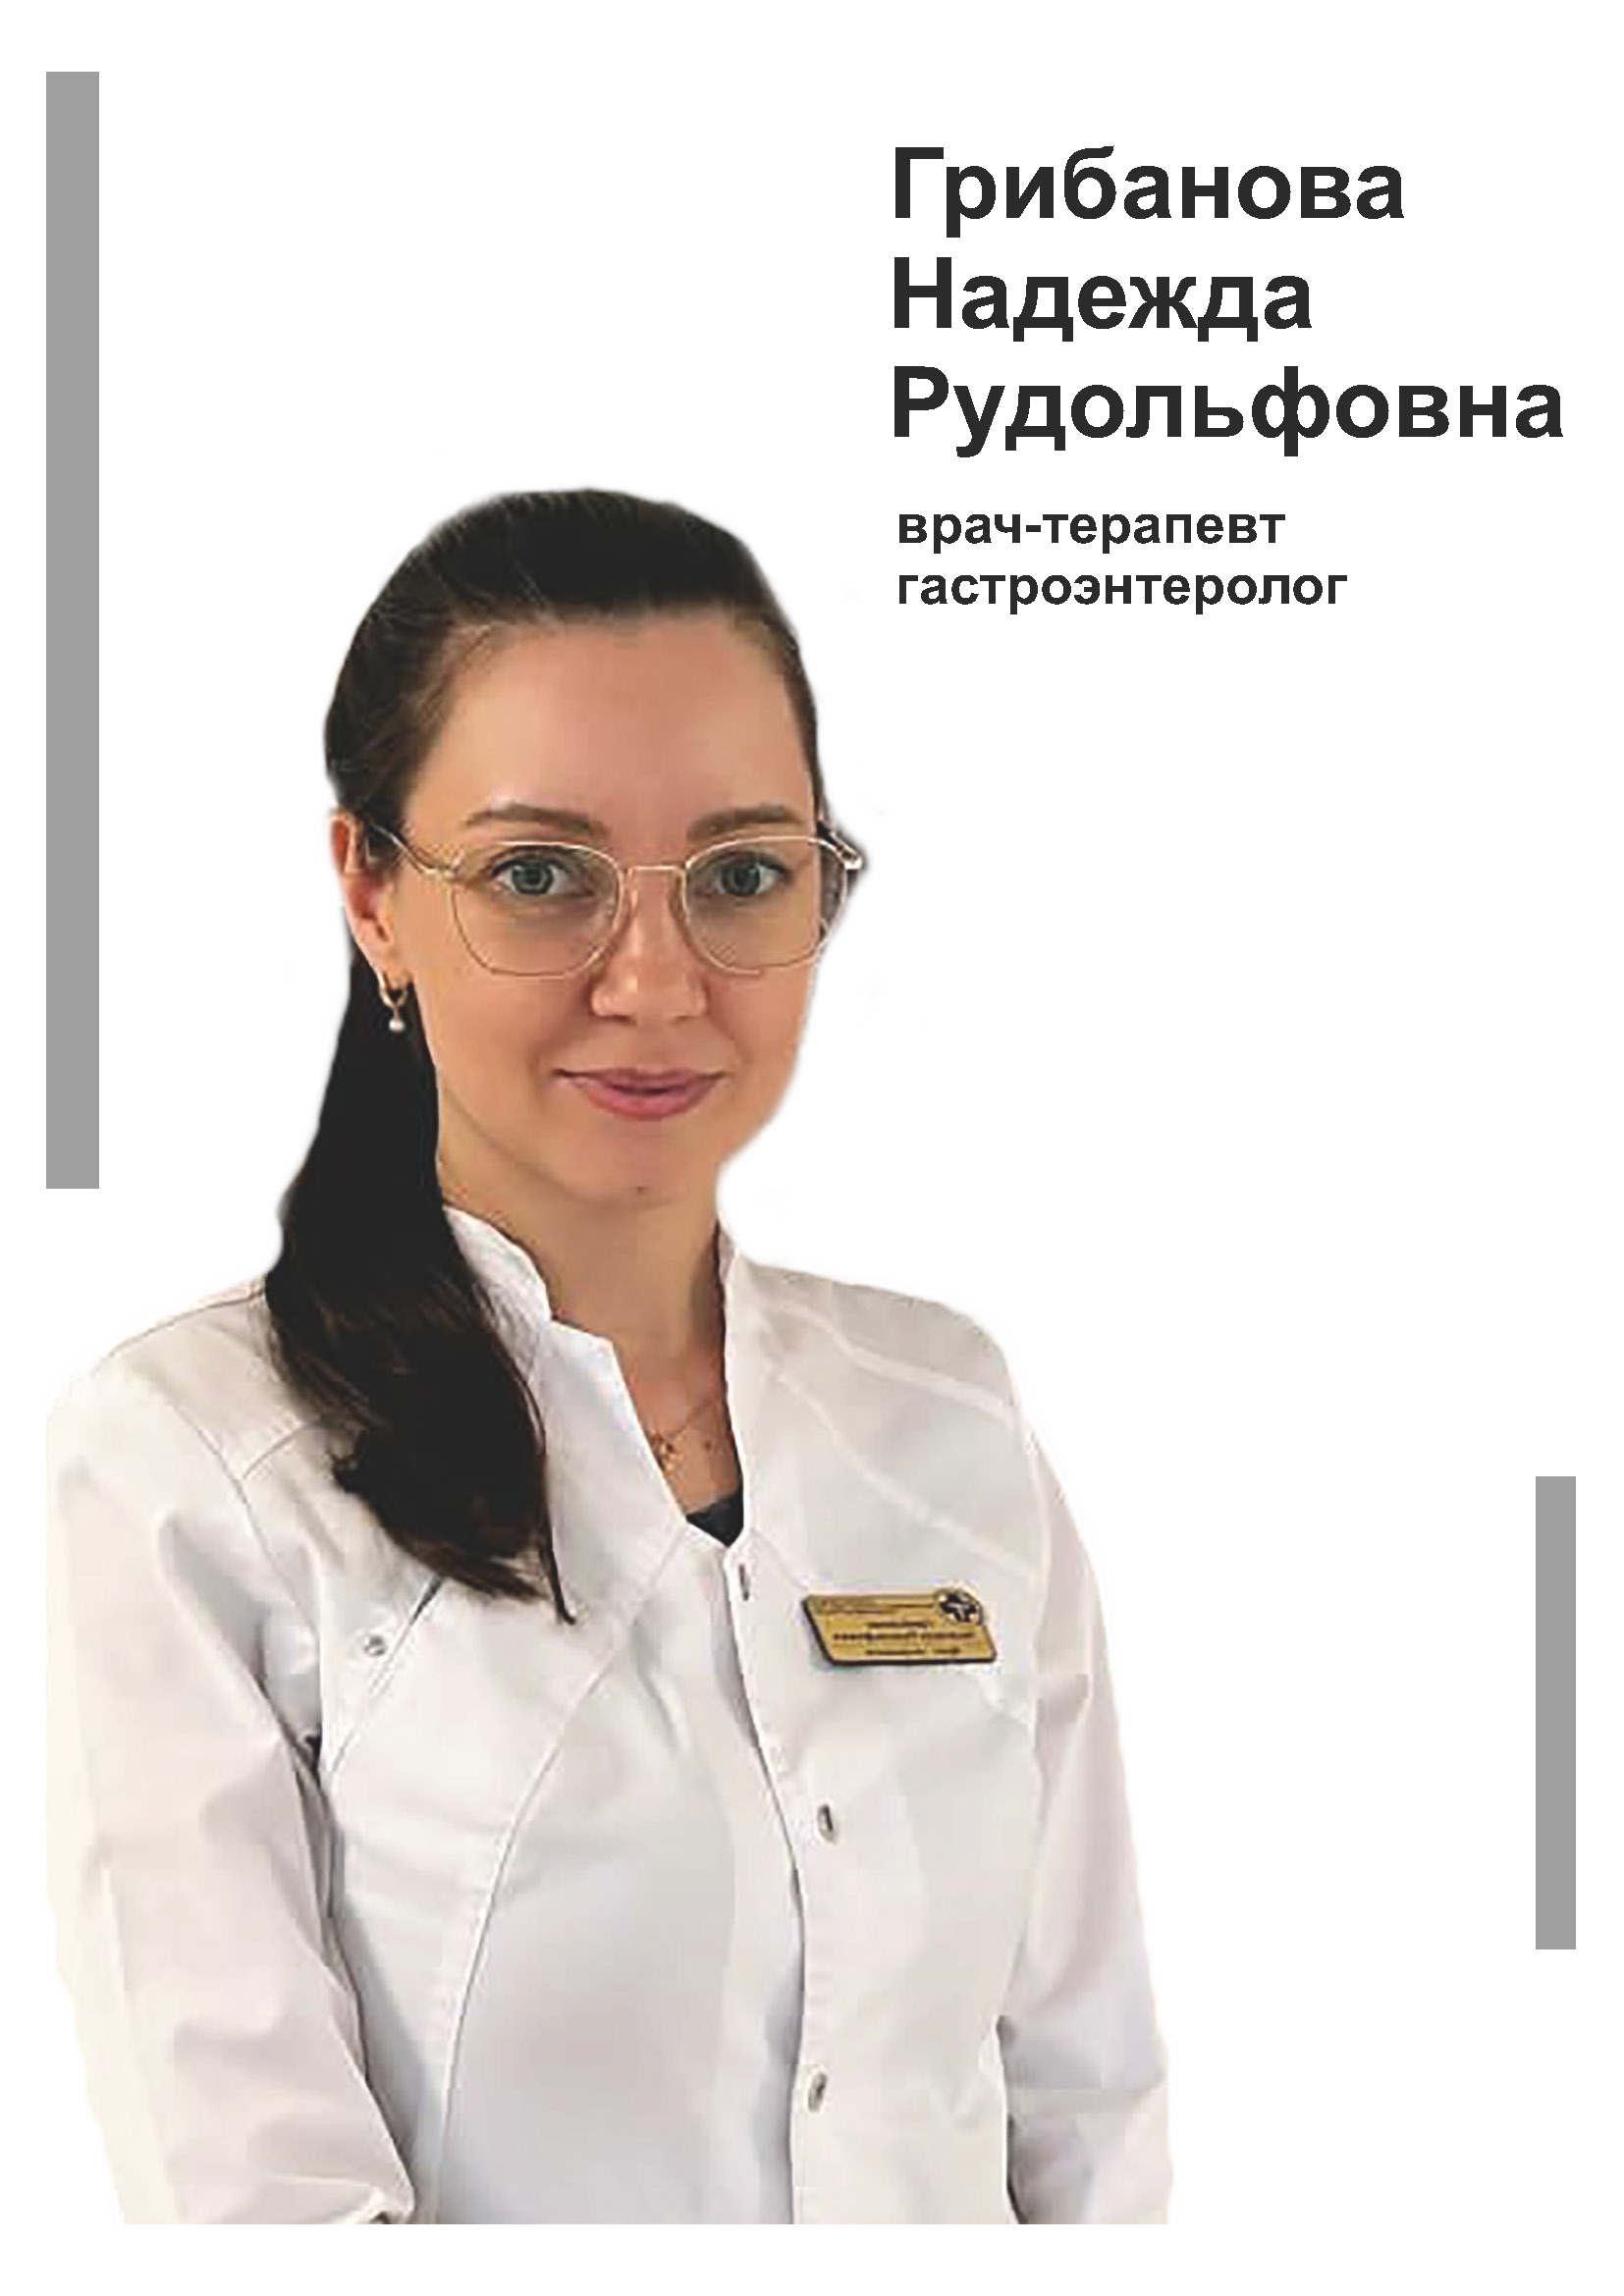 Грибанова Надежда Рудольфовна - терапевт, гастроэнтеролог в клинике Lezaffe г. Югорск